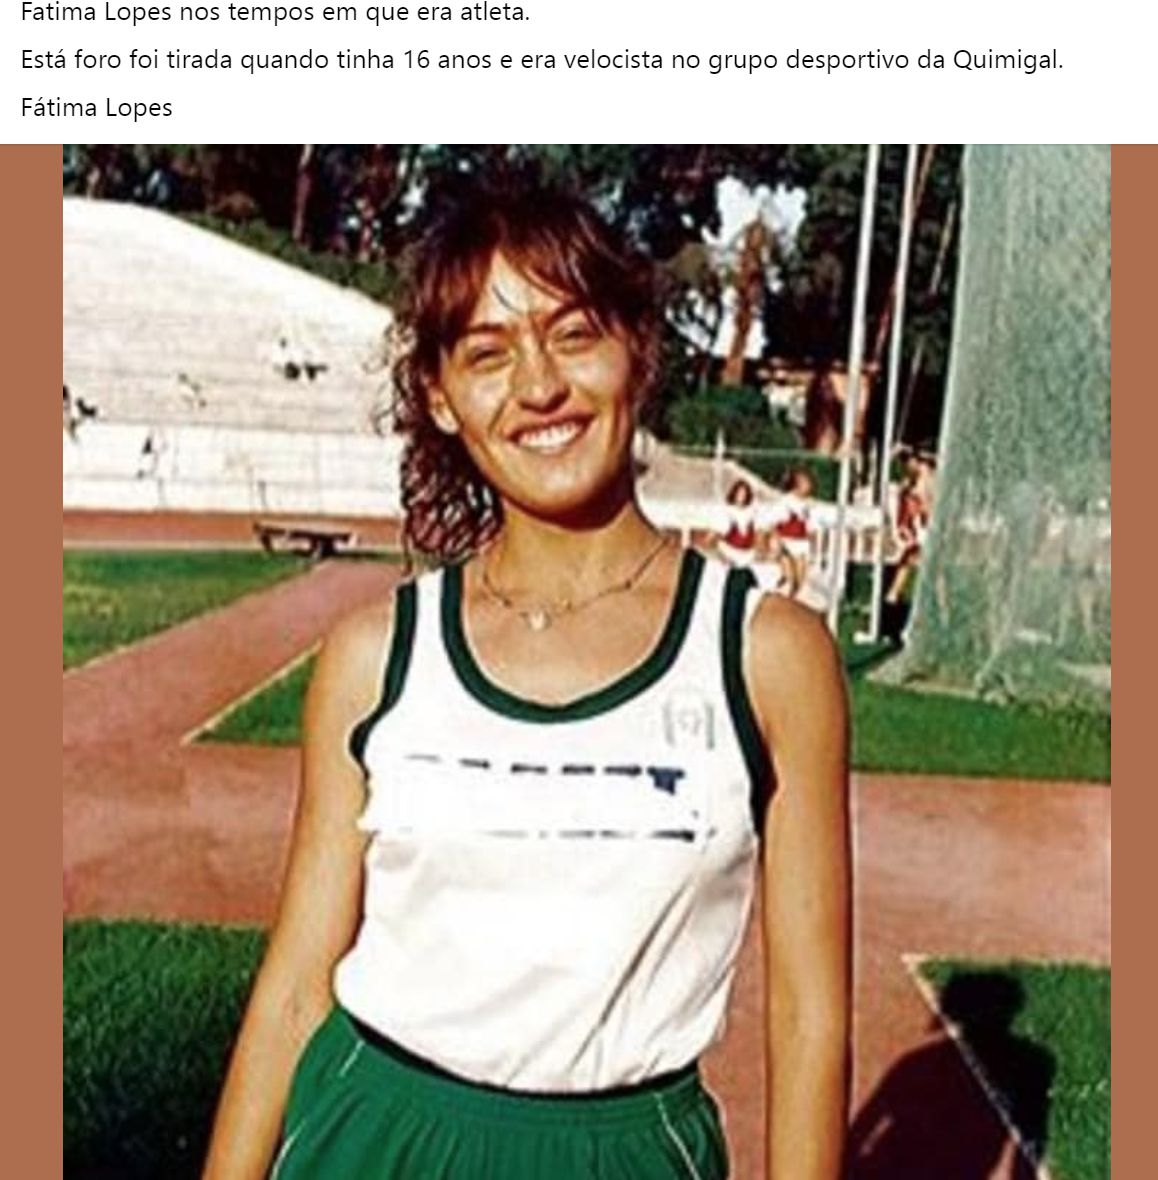 Fátima Lopes “apanhada” em “tesourinho” com 16 anos de idade: “Quando era atleta…”